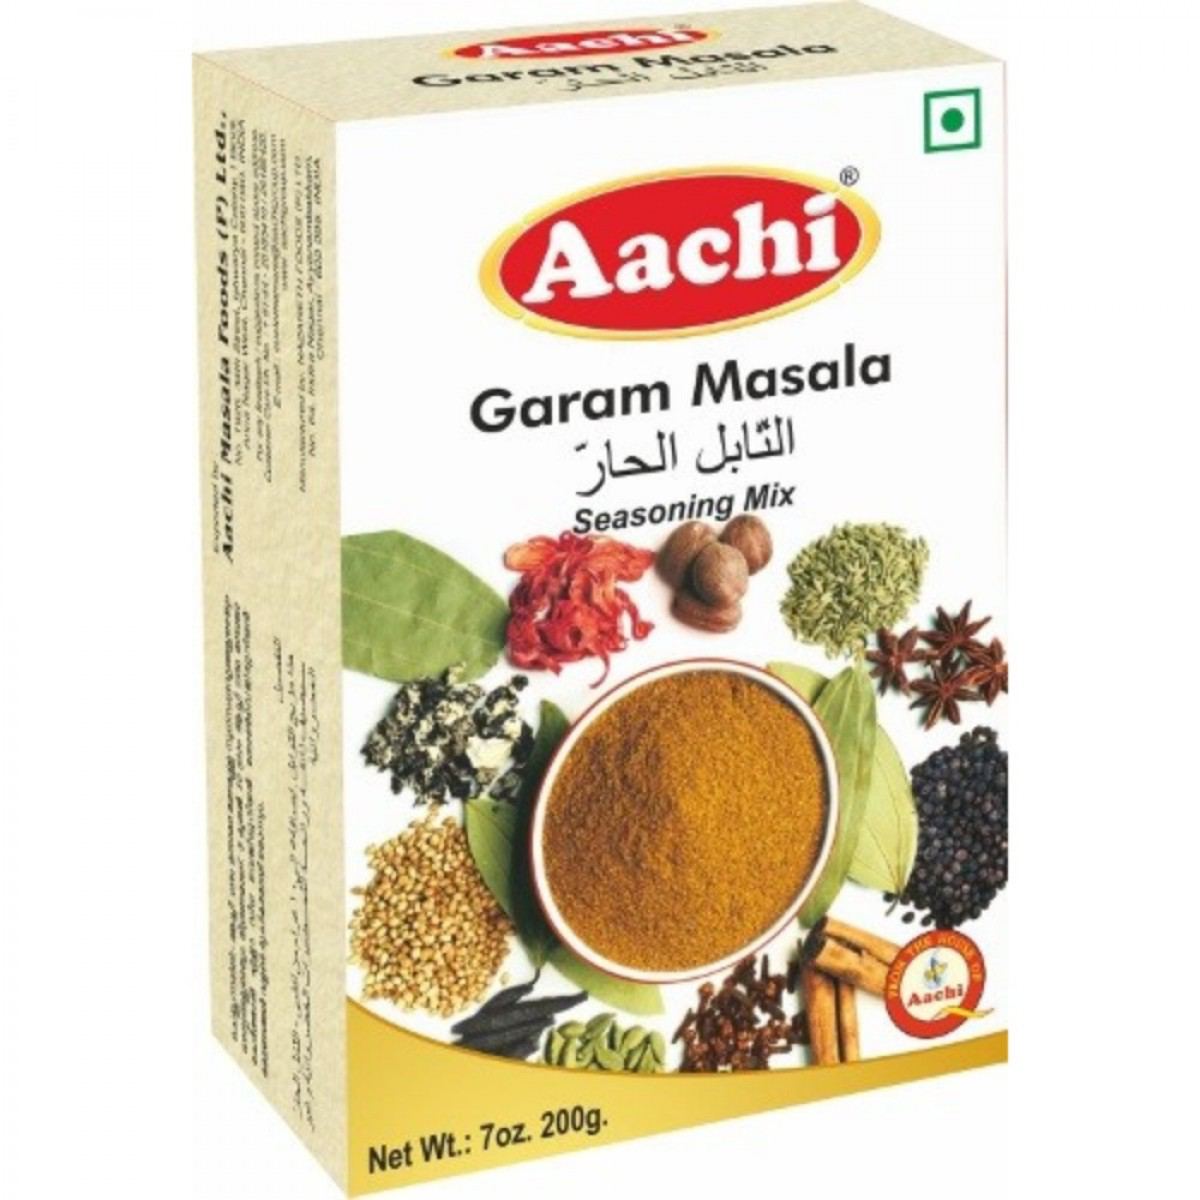 Aachi masala success story | padmasingh issac motivational story |  marketing strategy | aachi masala - YouTube